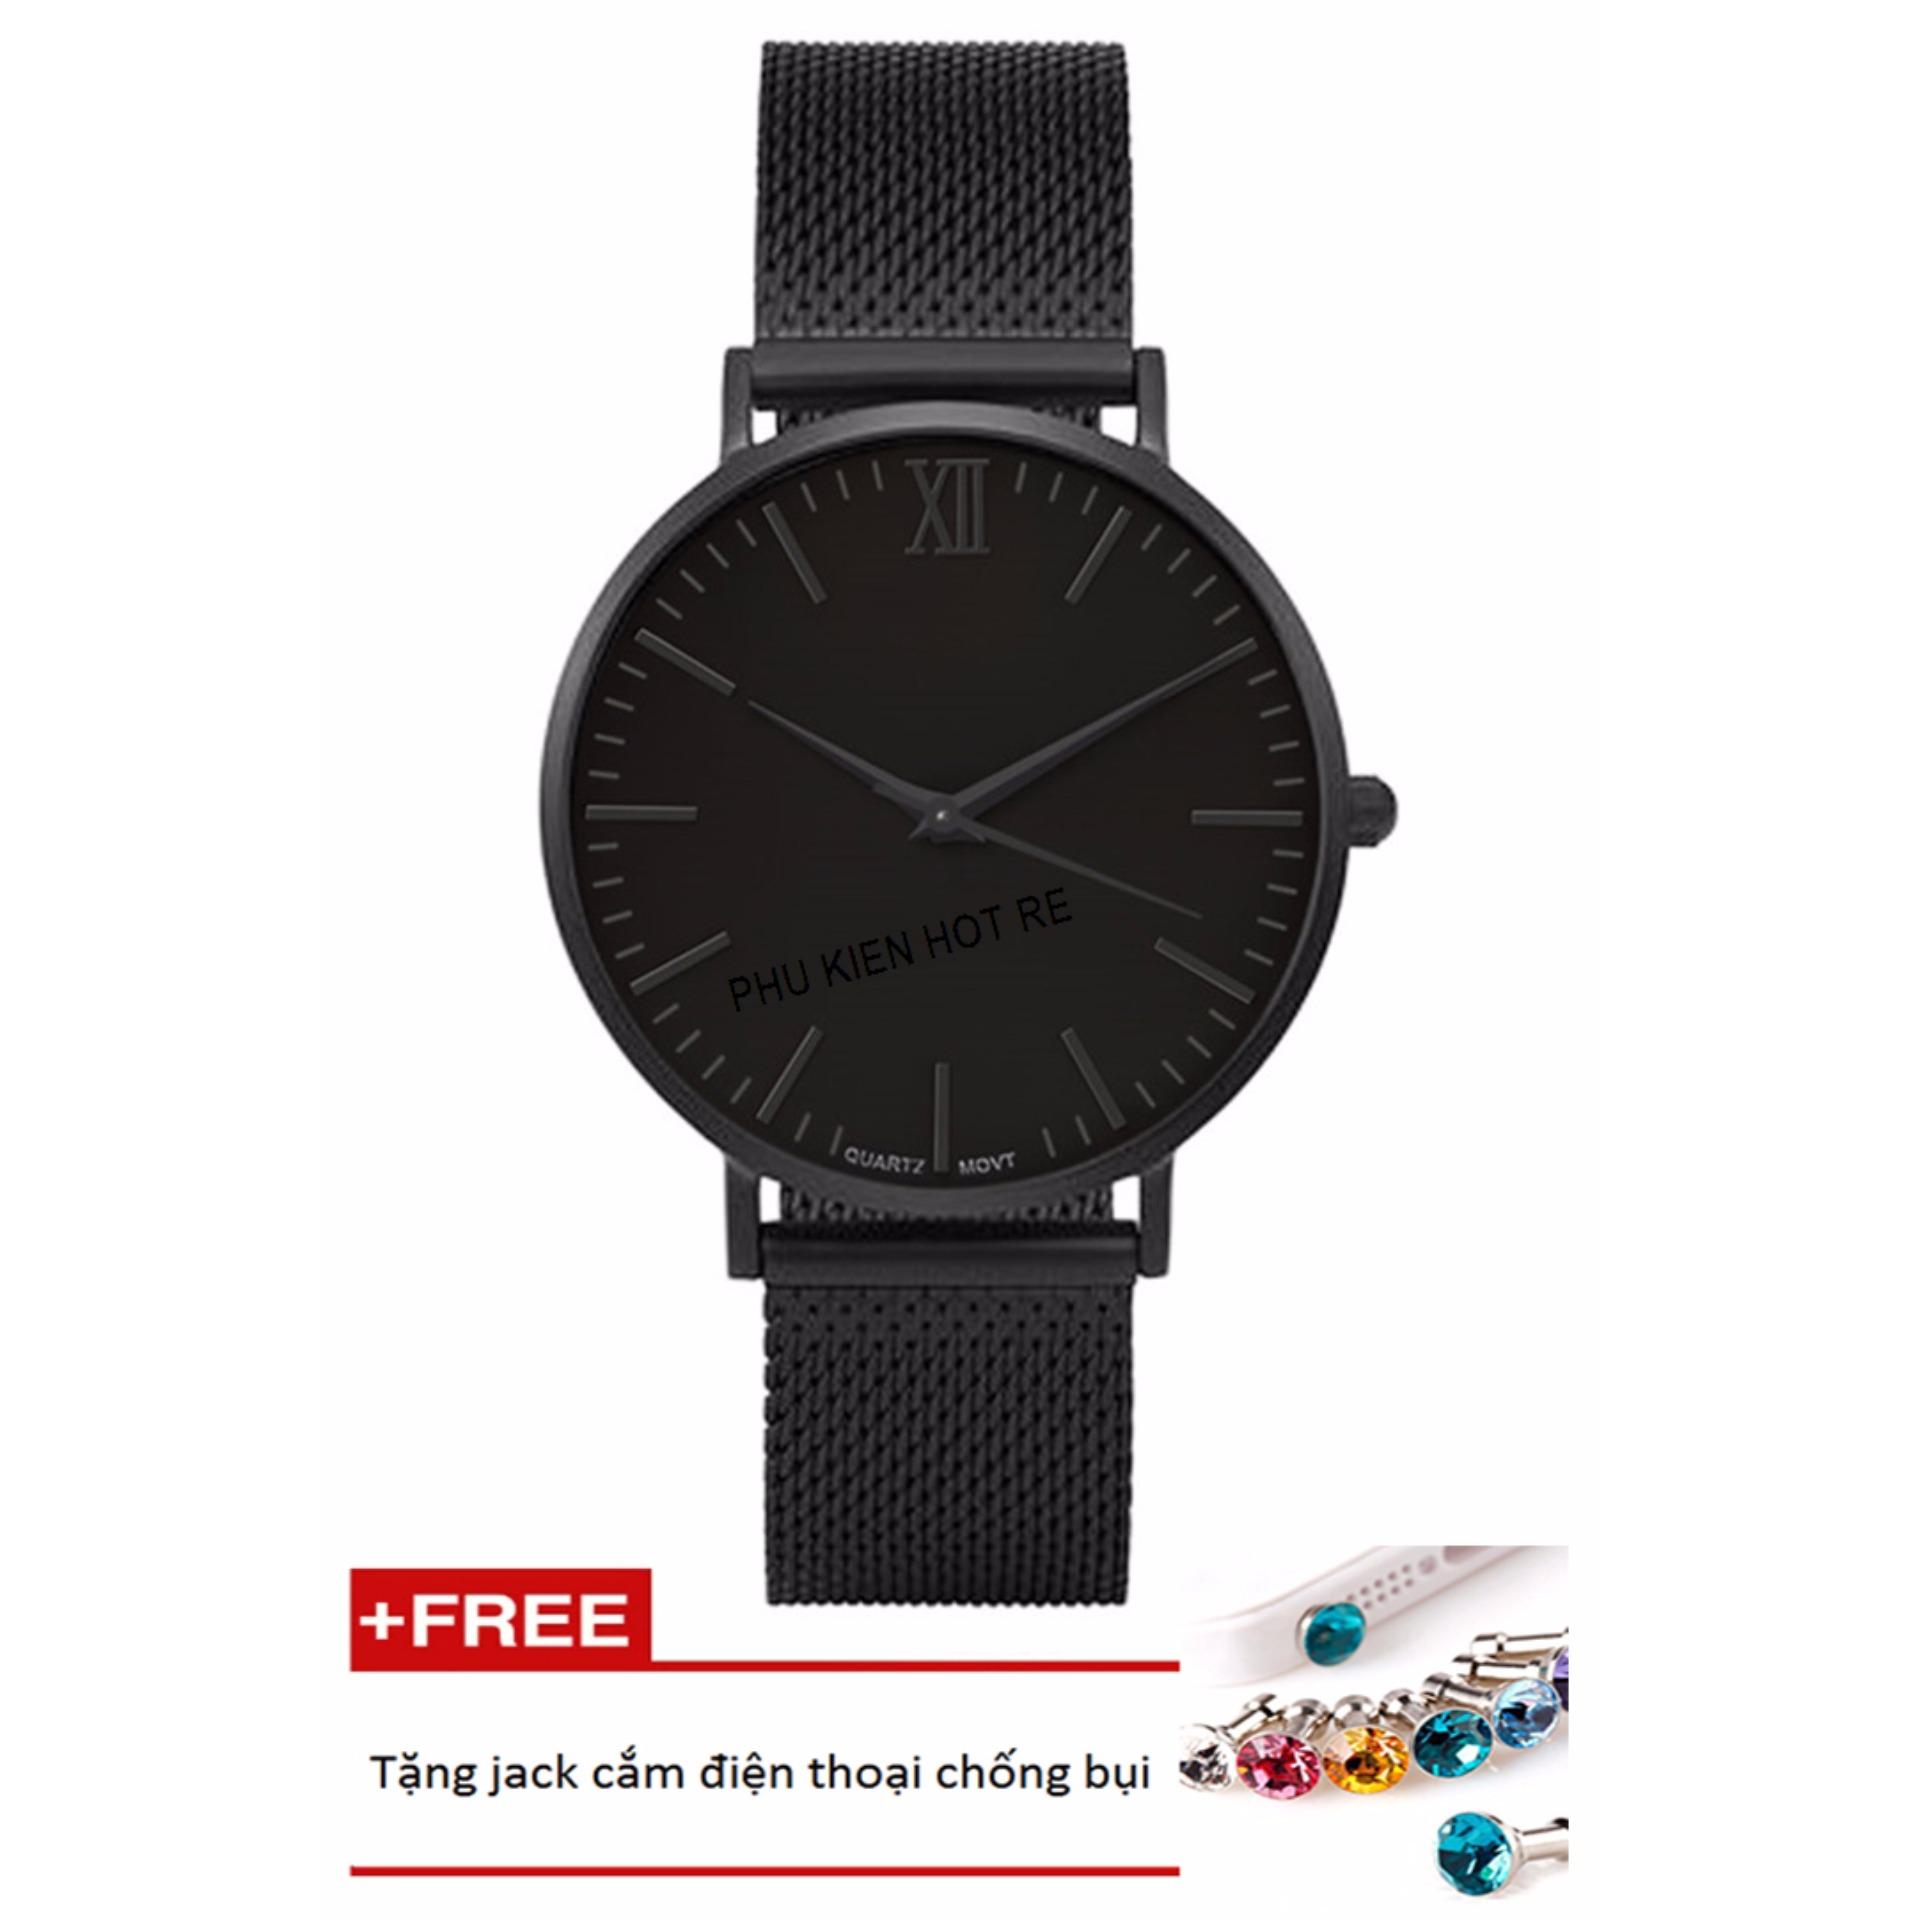 Đồng hồ nam dây hợp kim Geneva PKHRGE045-2 (đen)+ Tặng 1 jack chống bụi cho điện thoại